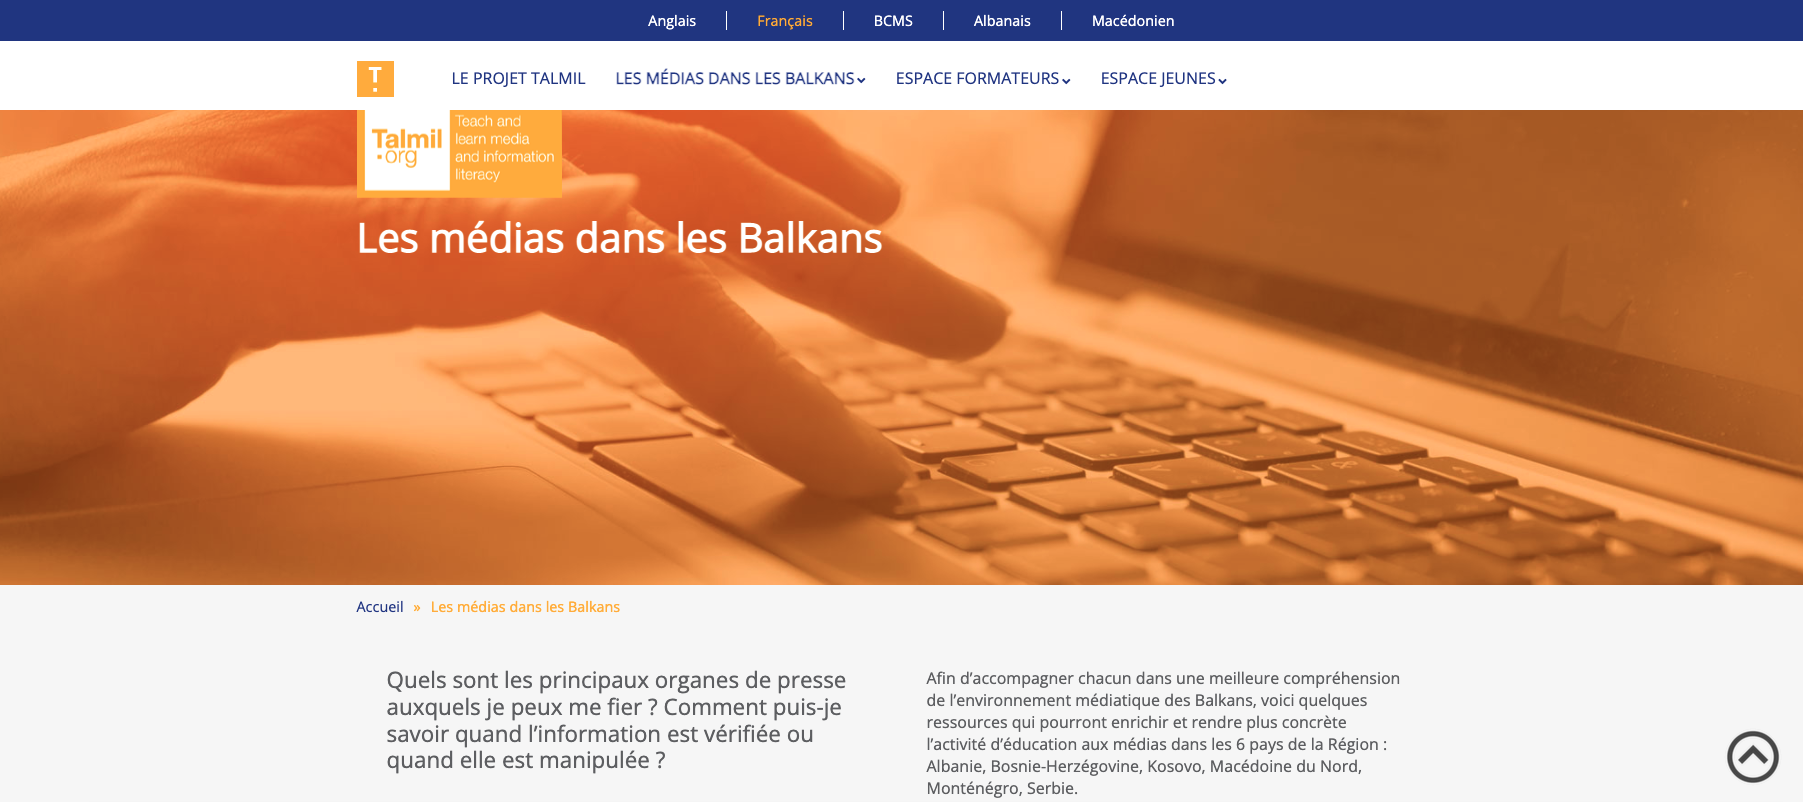 De nouveaux contenus sur TALMIL, la plateforme d’éducation aux médias dans les Balkans